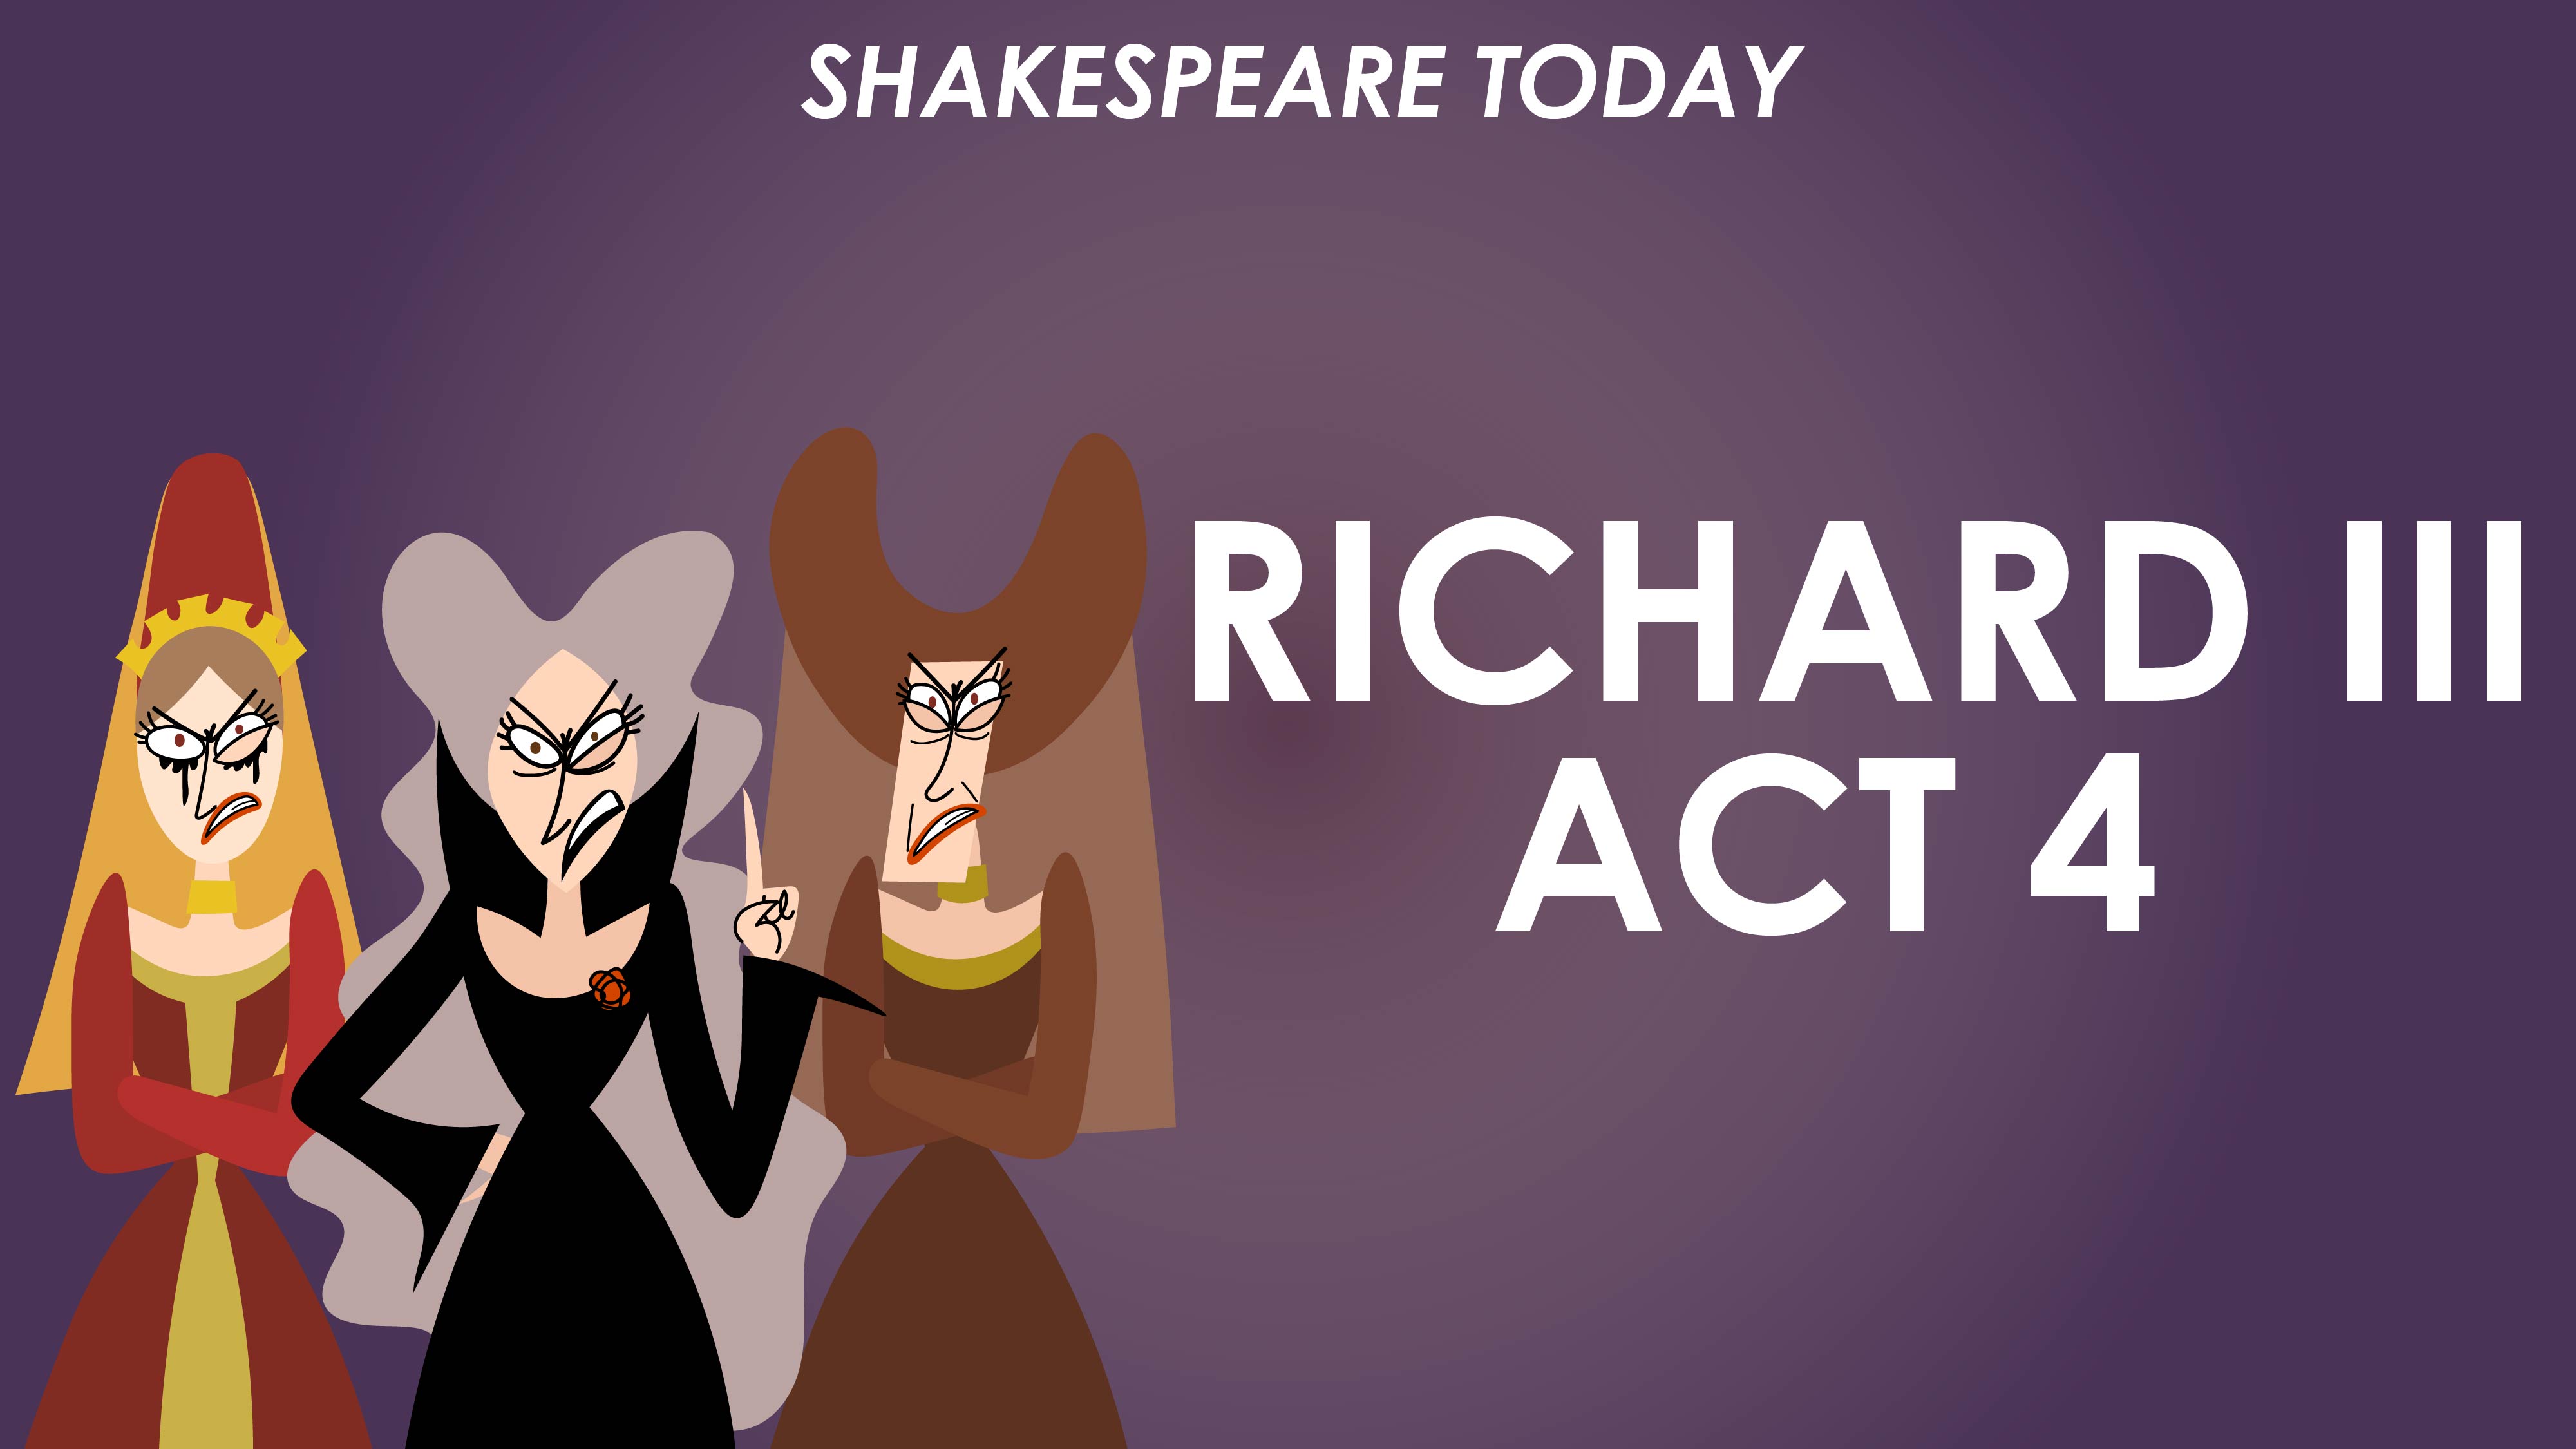 Richard III Act 4 Summary - Shakespeare Today Series